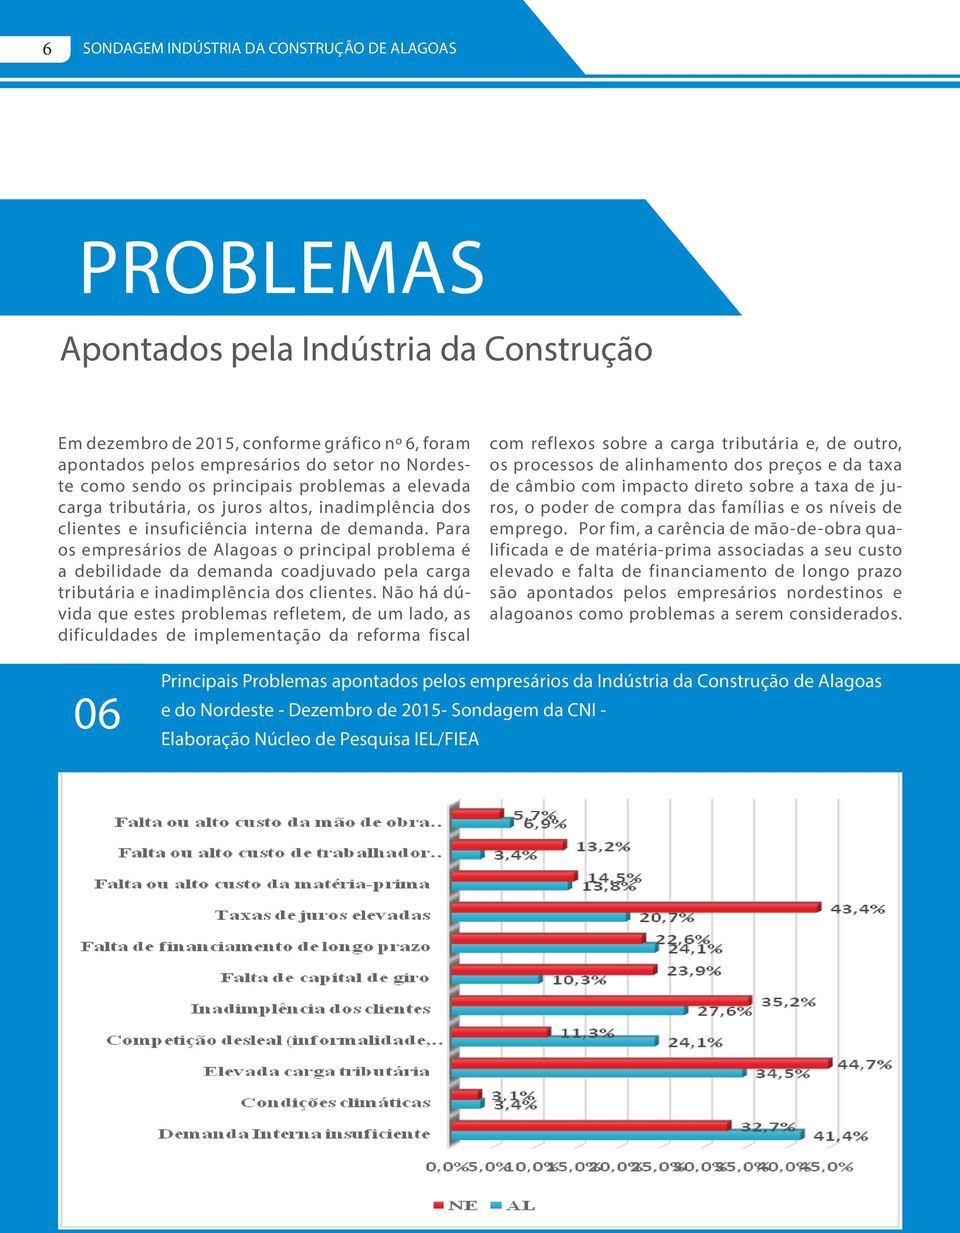 Para os empresários de Alagoas o principal problema é a debilidade da demanda coadjuvado pela carga tributária e inadimplência dos clientes.